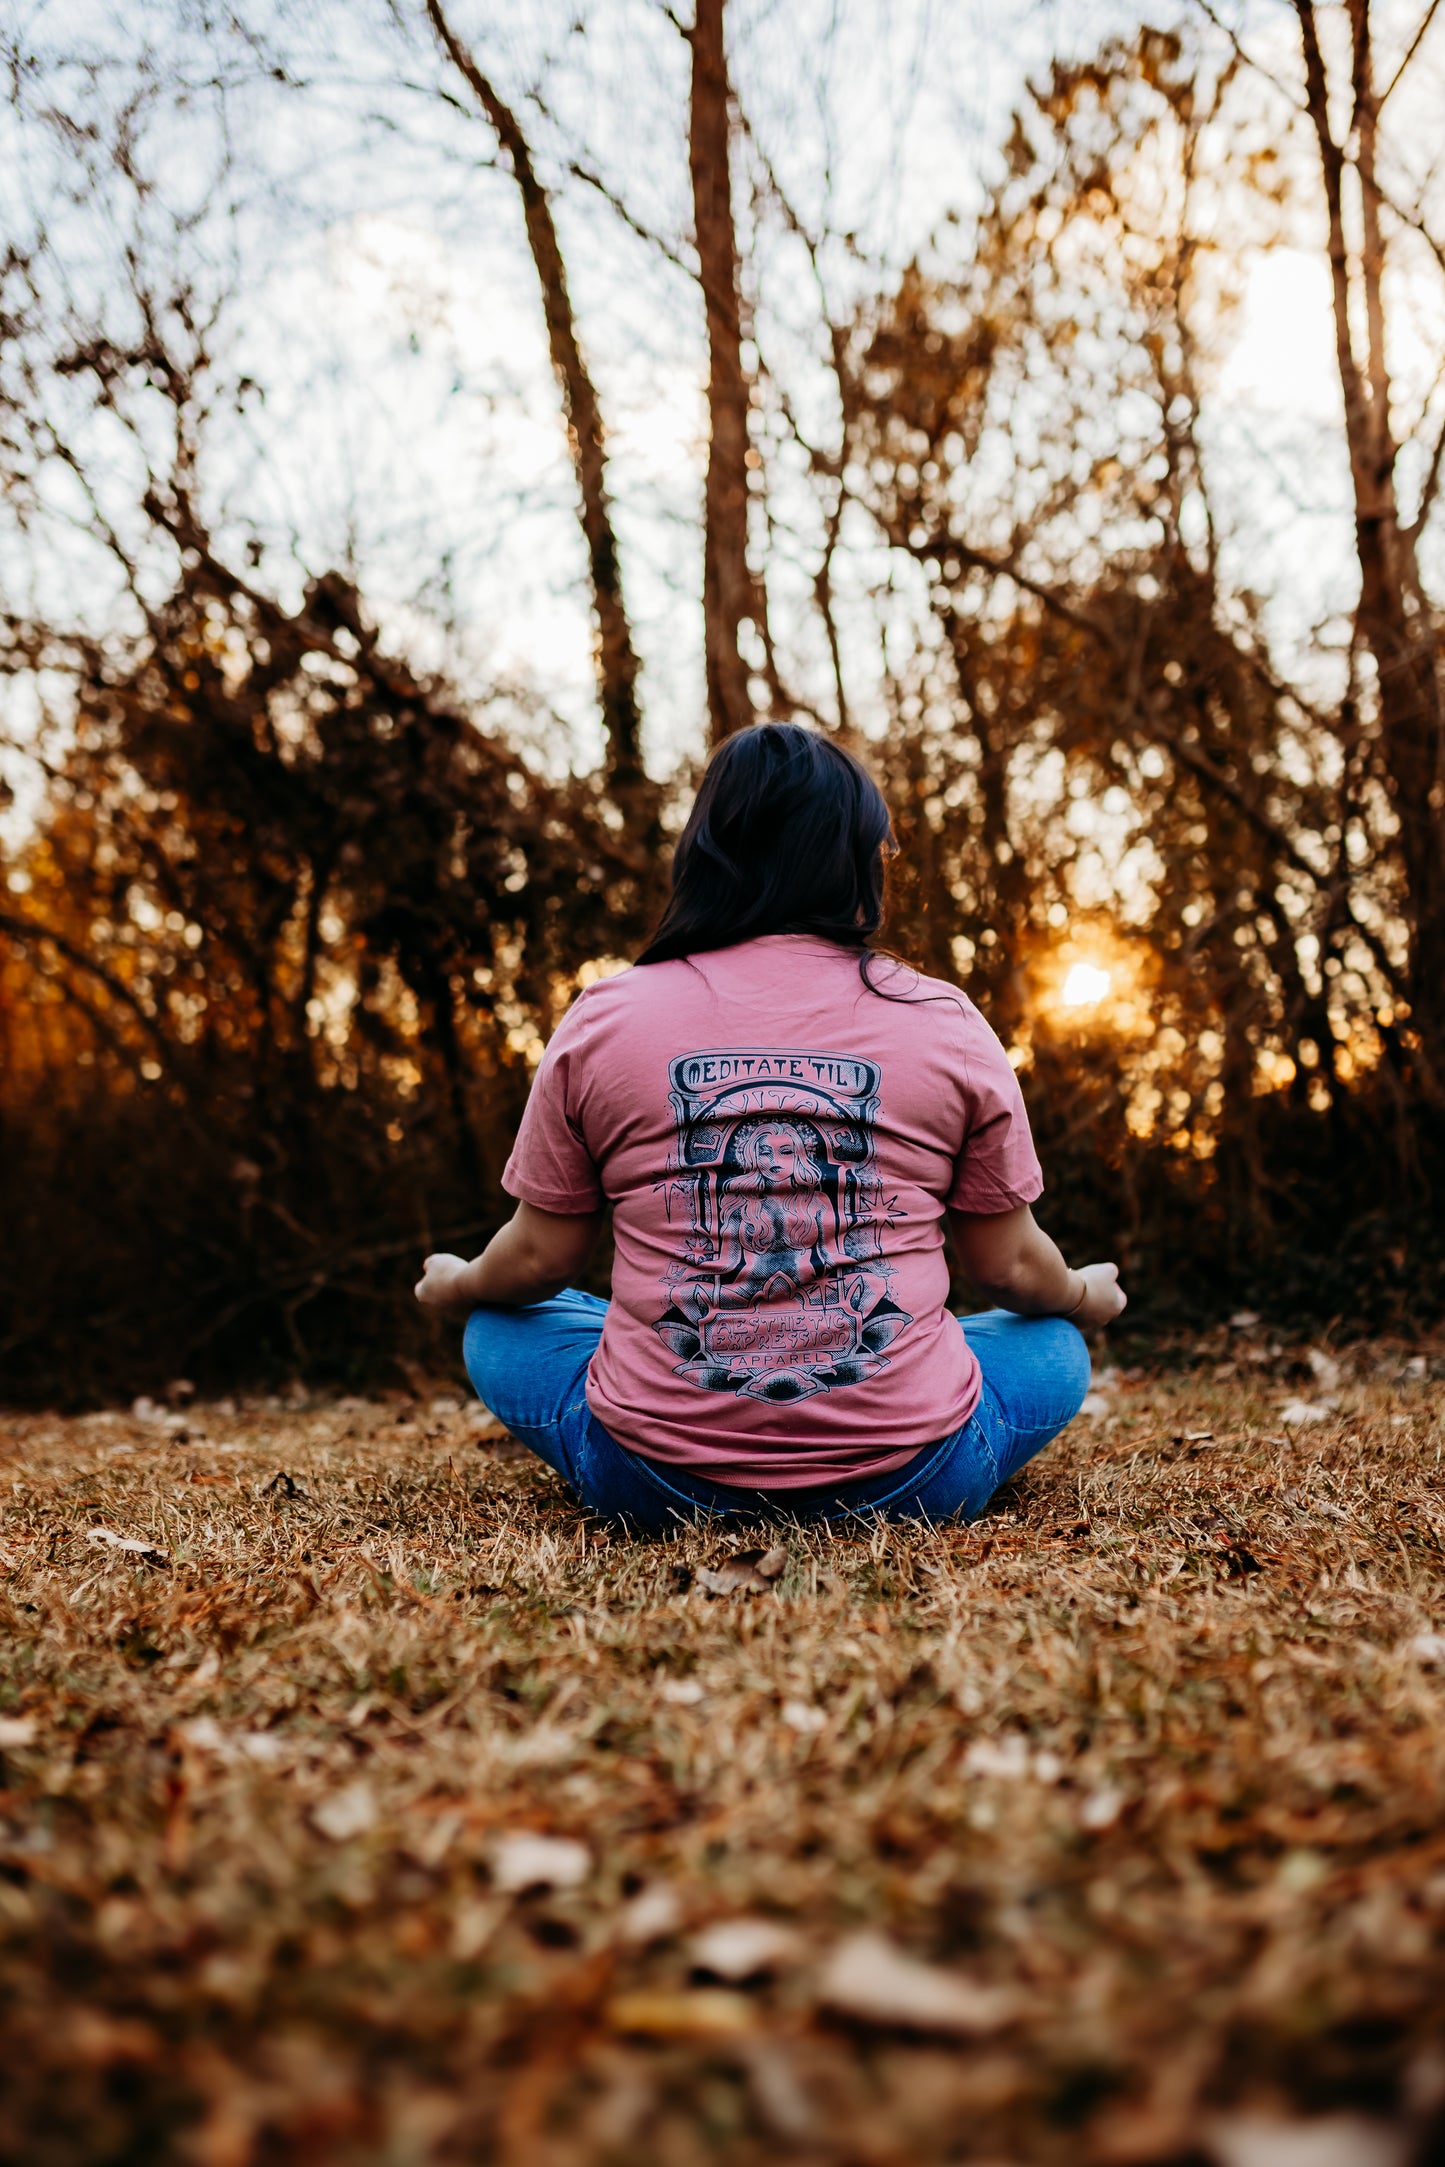 Meditate til' I levitate T-shirt